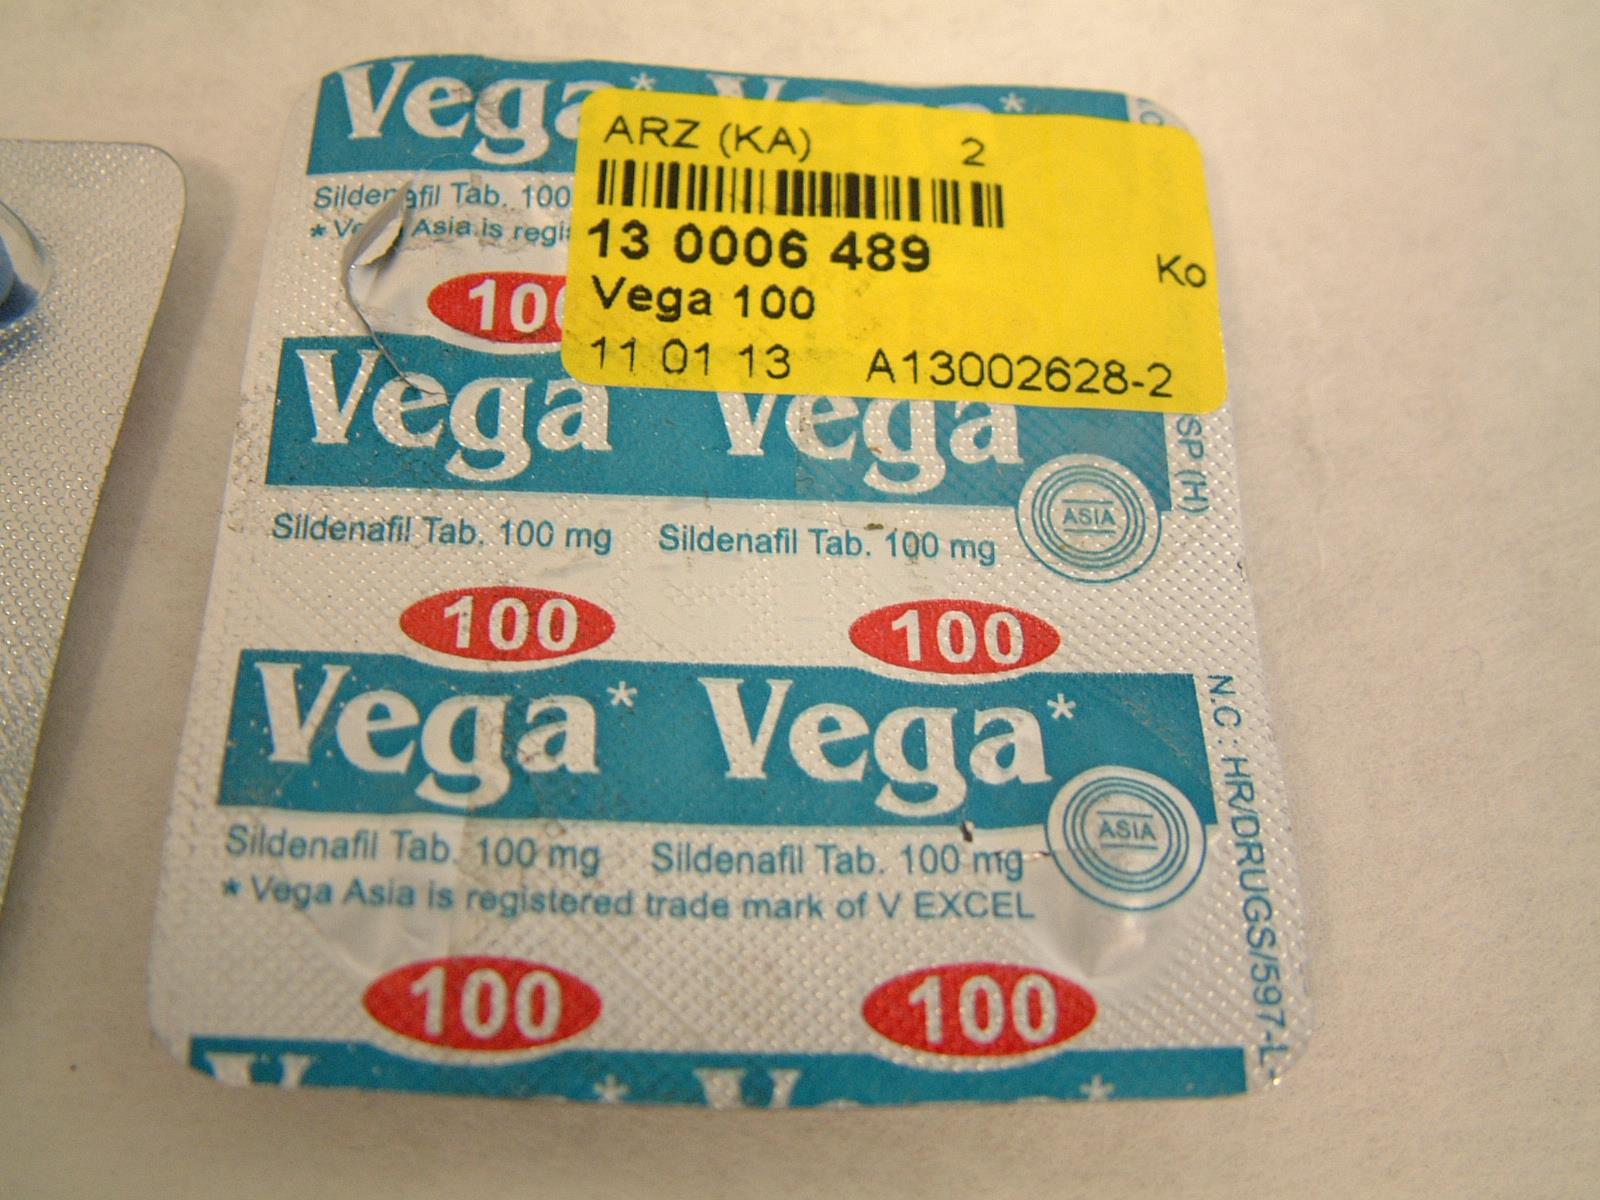 Image of the illigal product: Vega 100